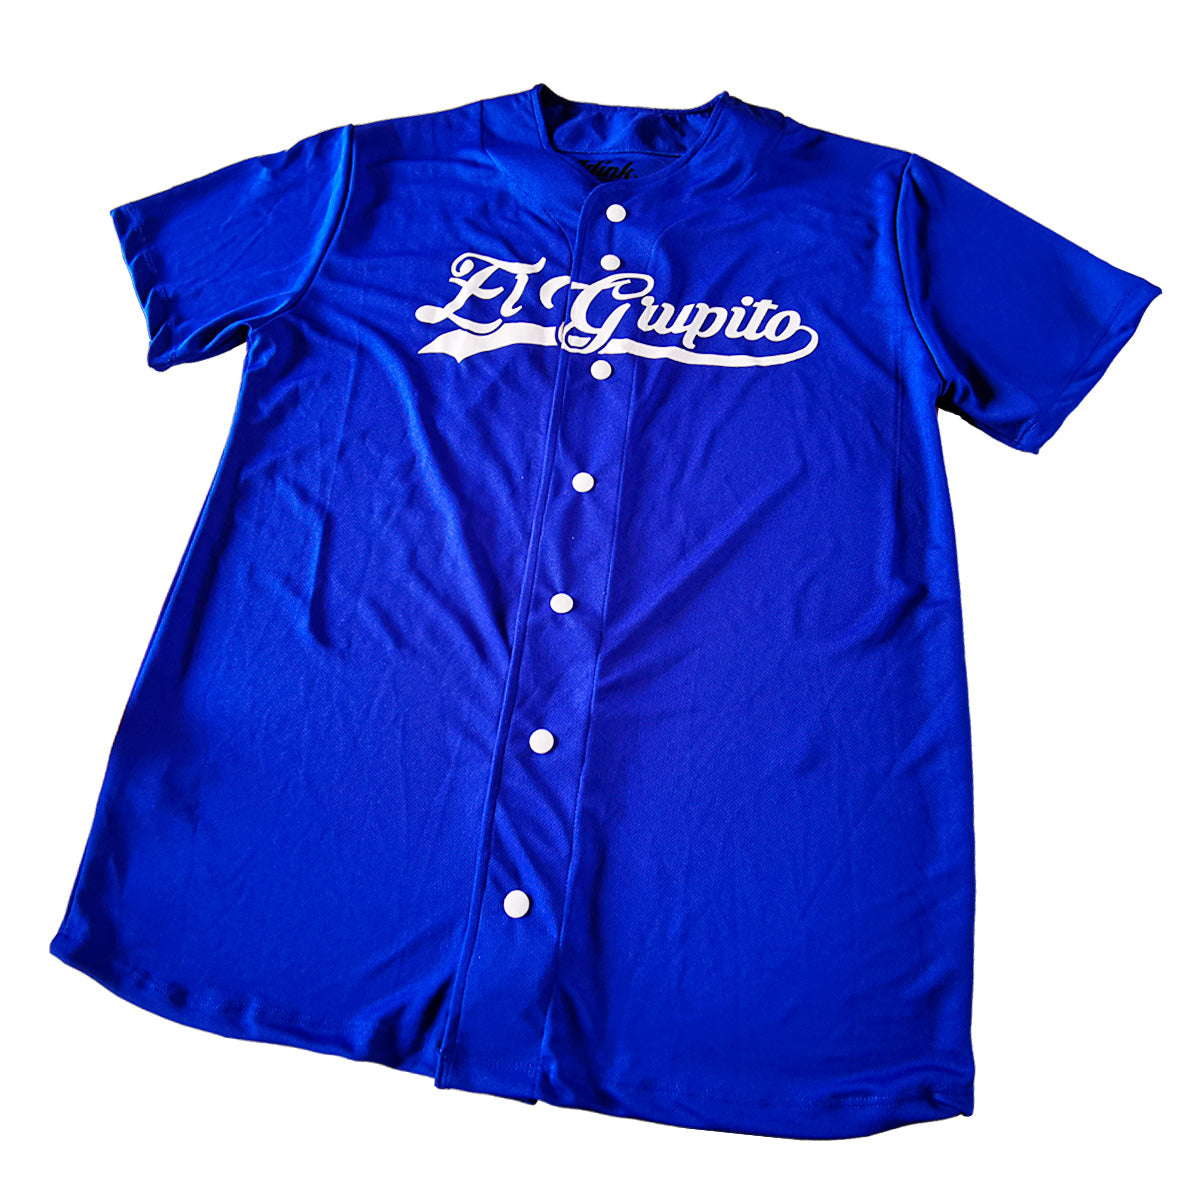 jersey beisbol softbol camisola personalizado dama azul rey en guadalajara